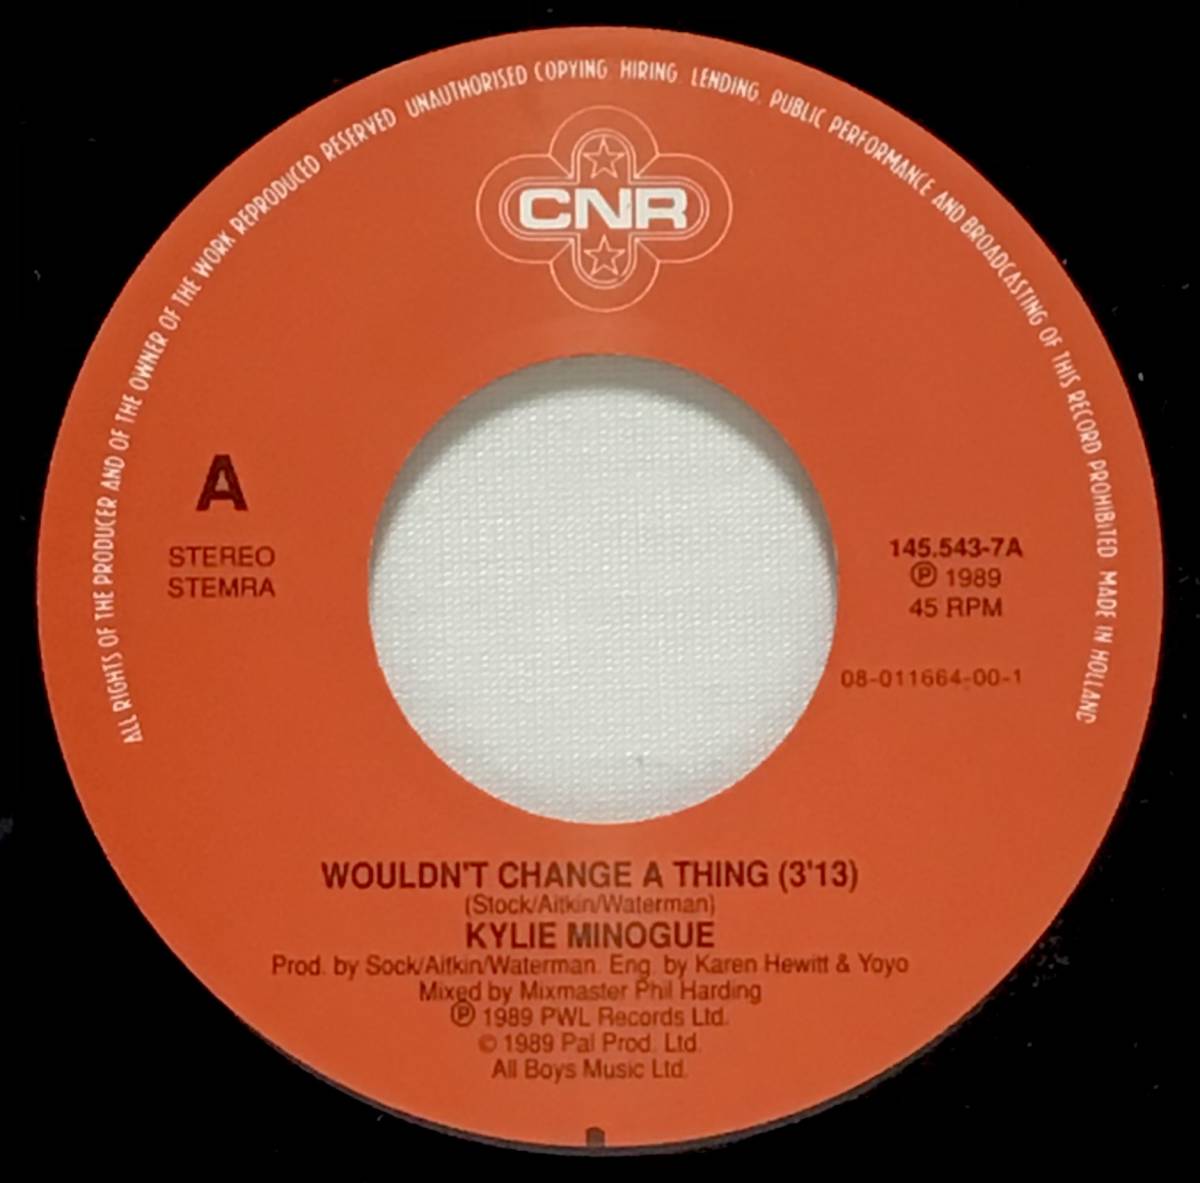 【蘭7】 KYLIE MINOGUE / WOULDN'T CHANGE A THING / IT'S NO SECRET / 1989 オランダ盤 7インチシングルレコード EP 45 EUROBEAT_画像4